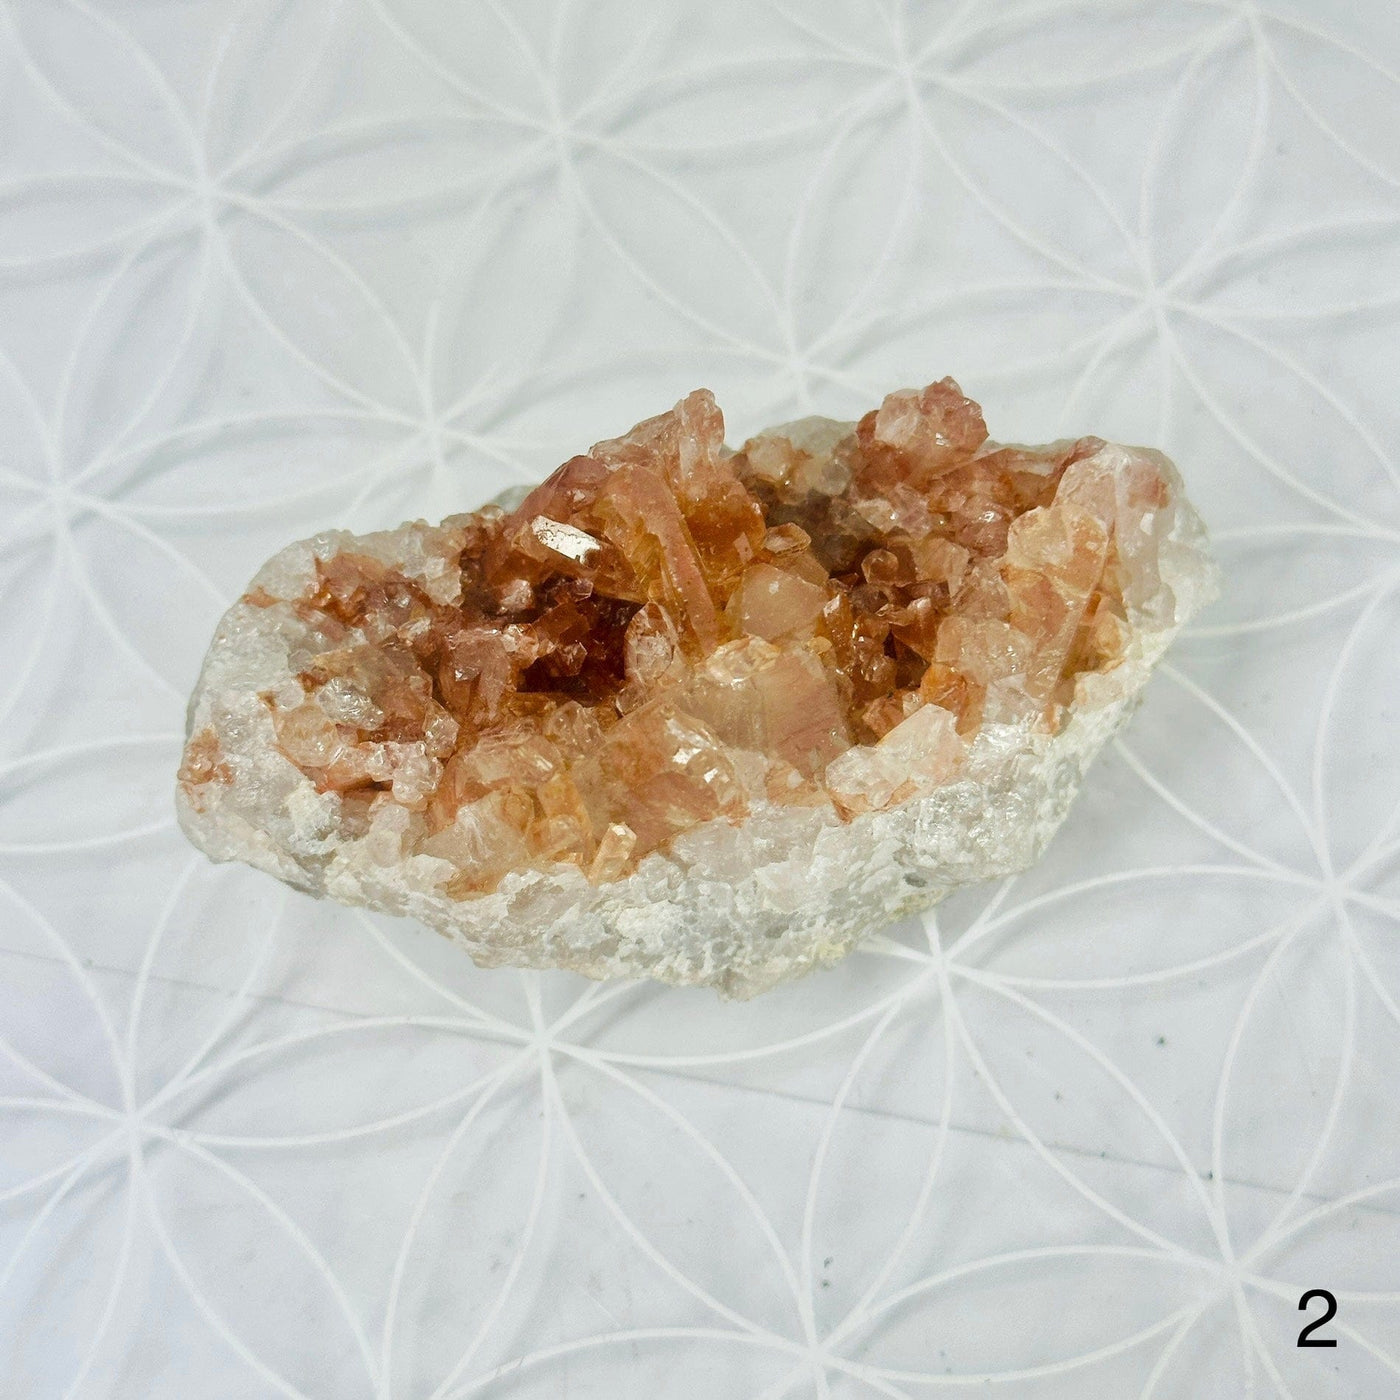 Tangerine Quartz Cluster - Crystal Cluster - YOU CHOOSE variant 2 labeled